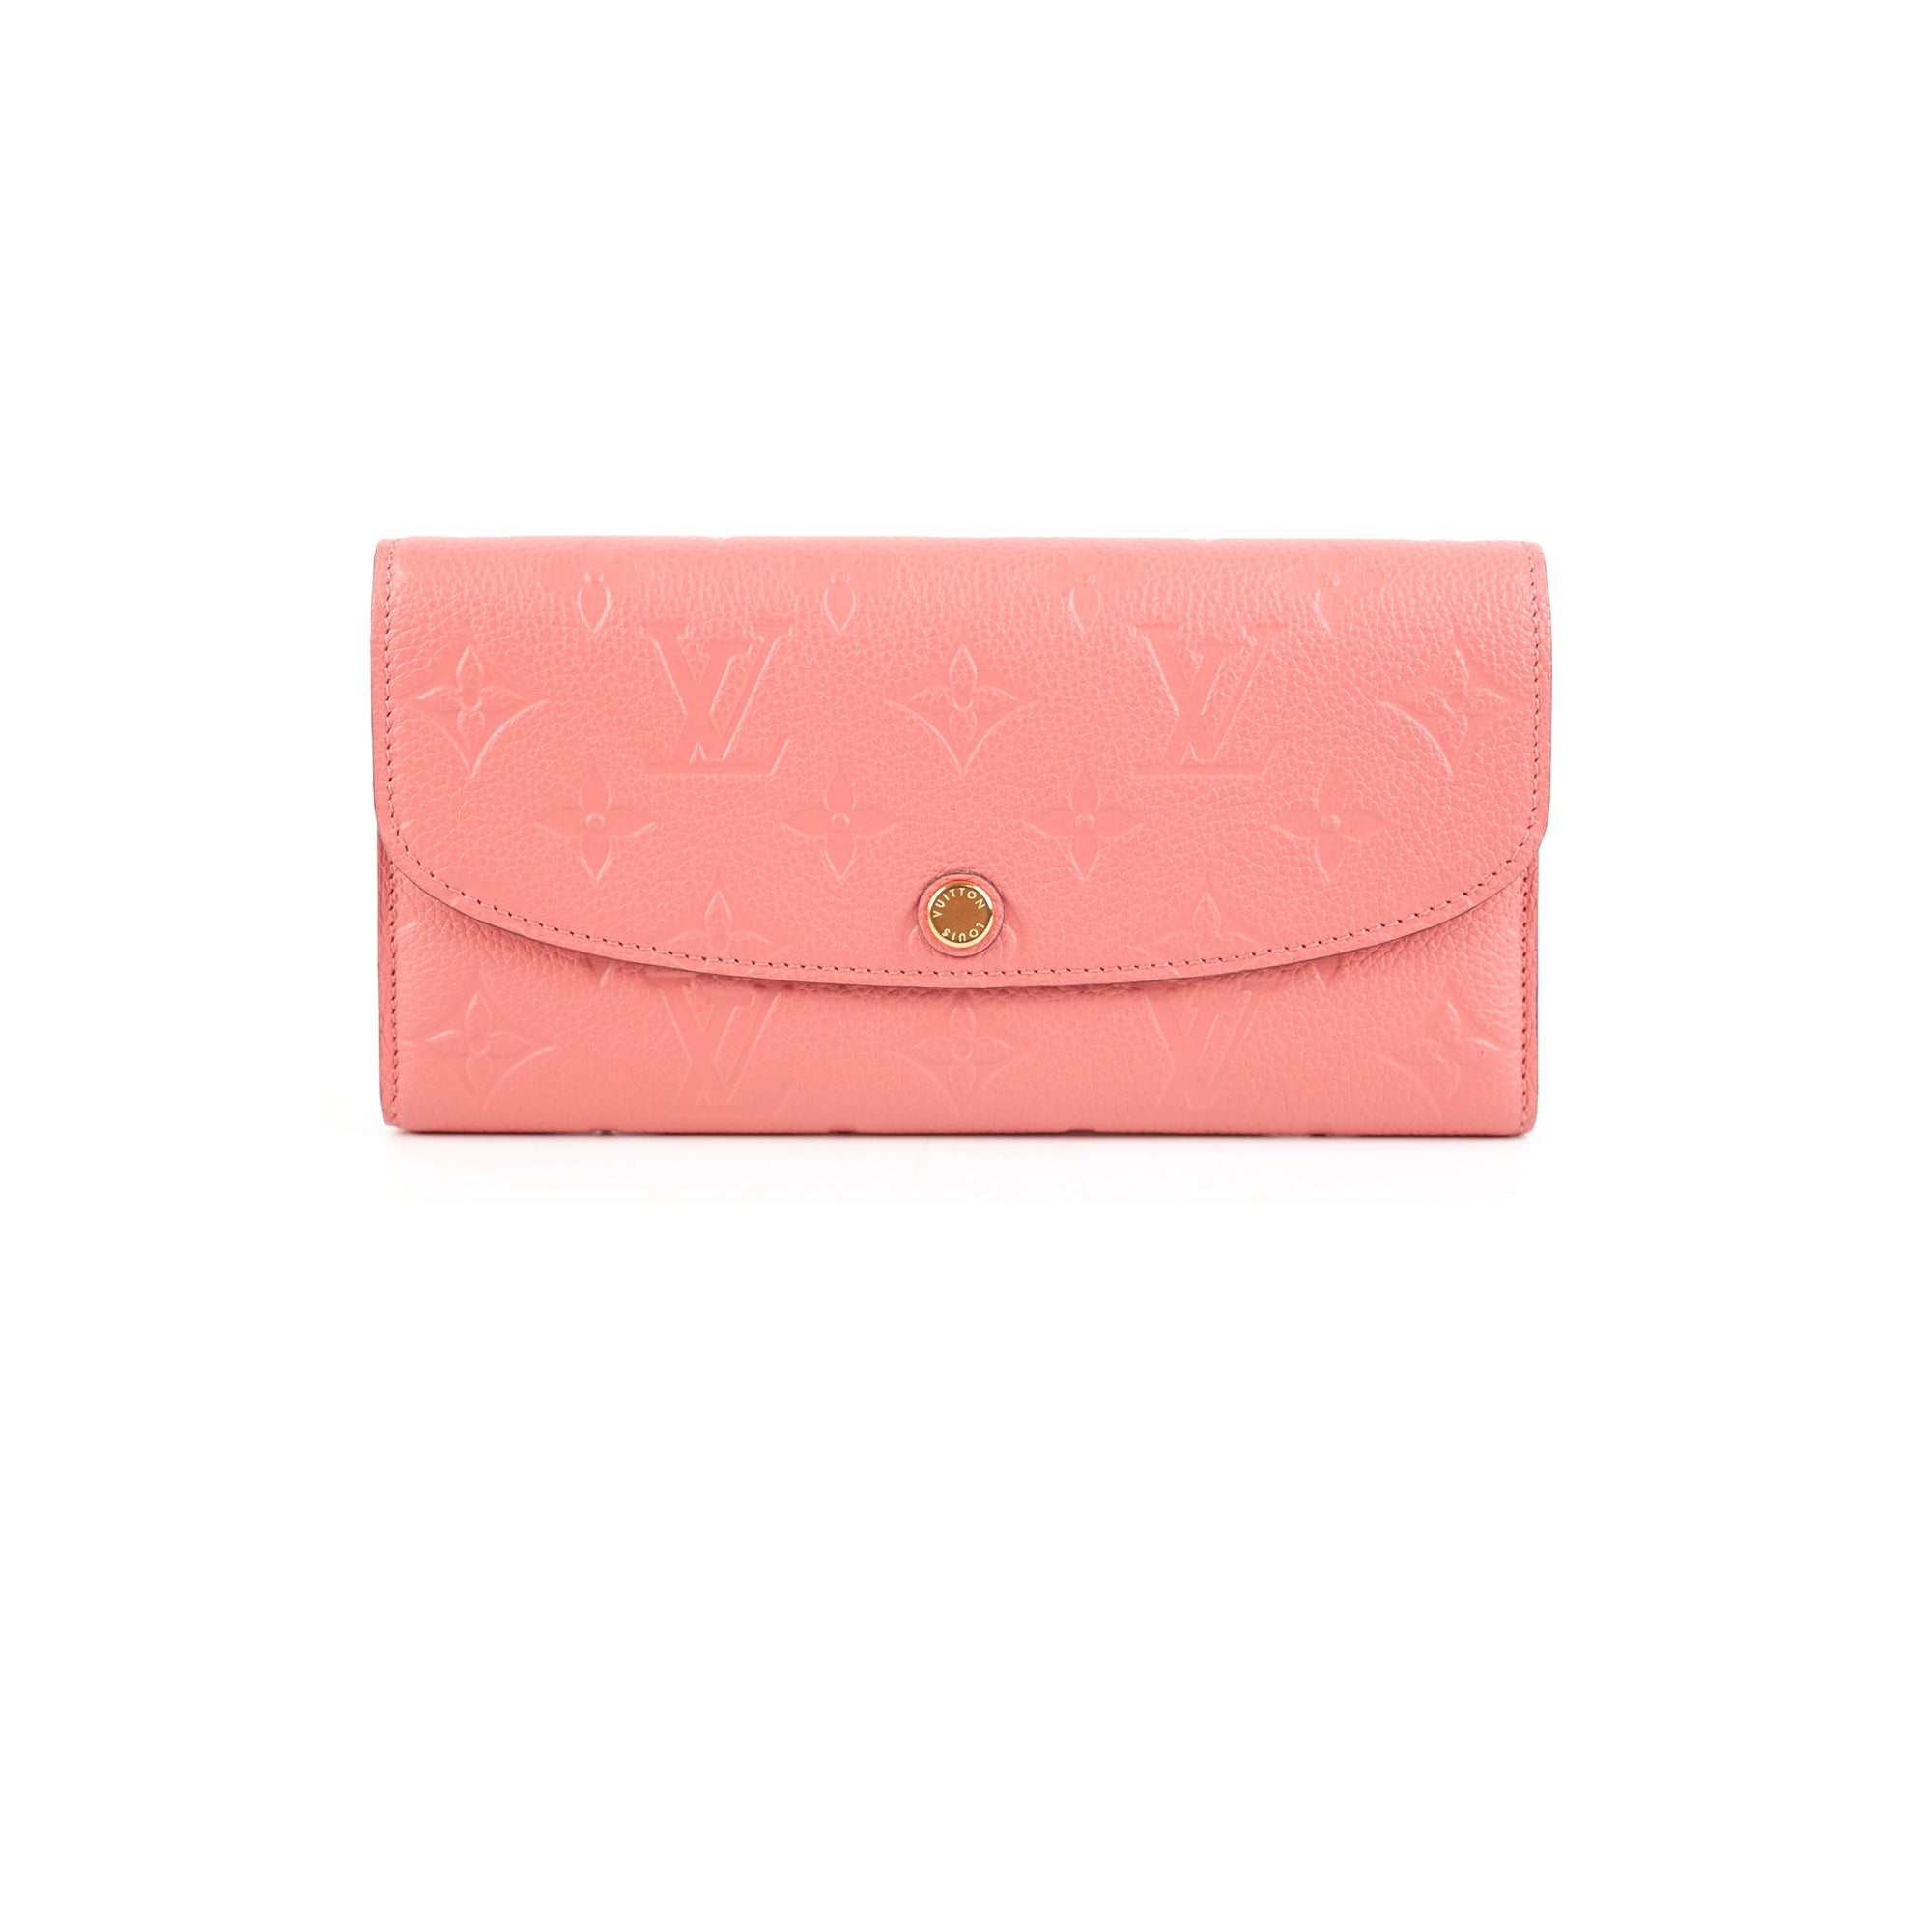 empreinte wallet pink